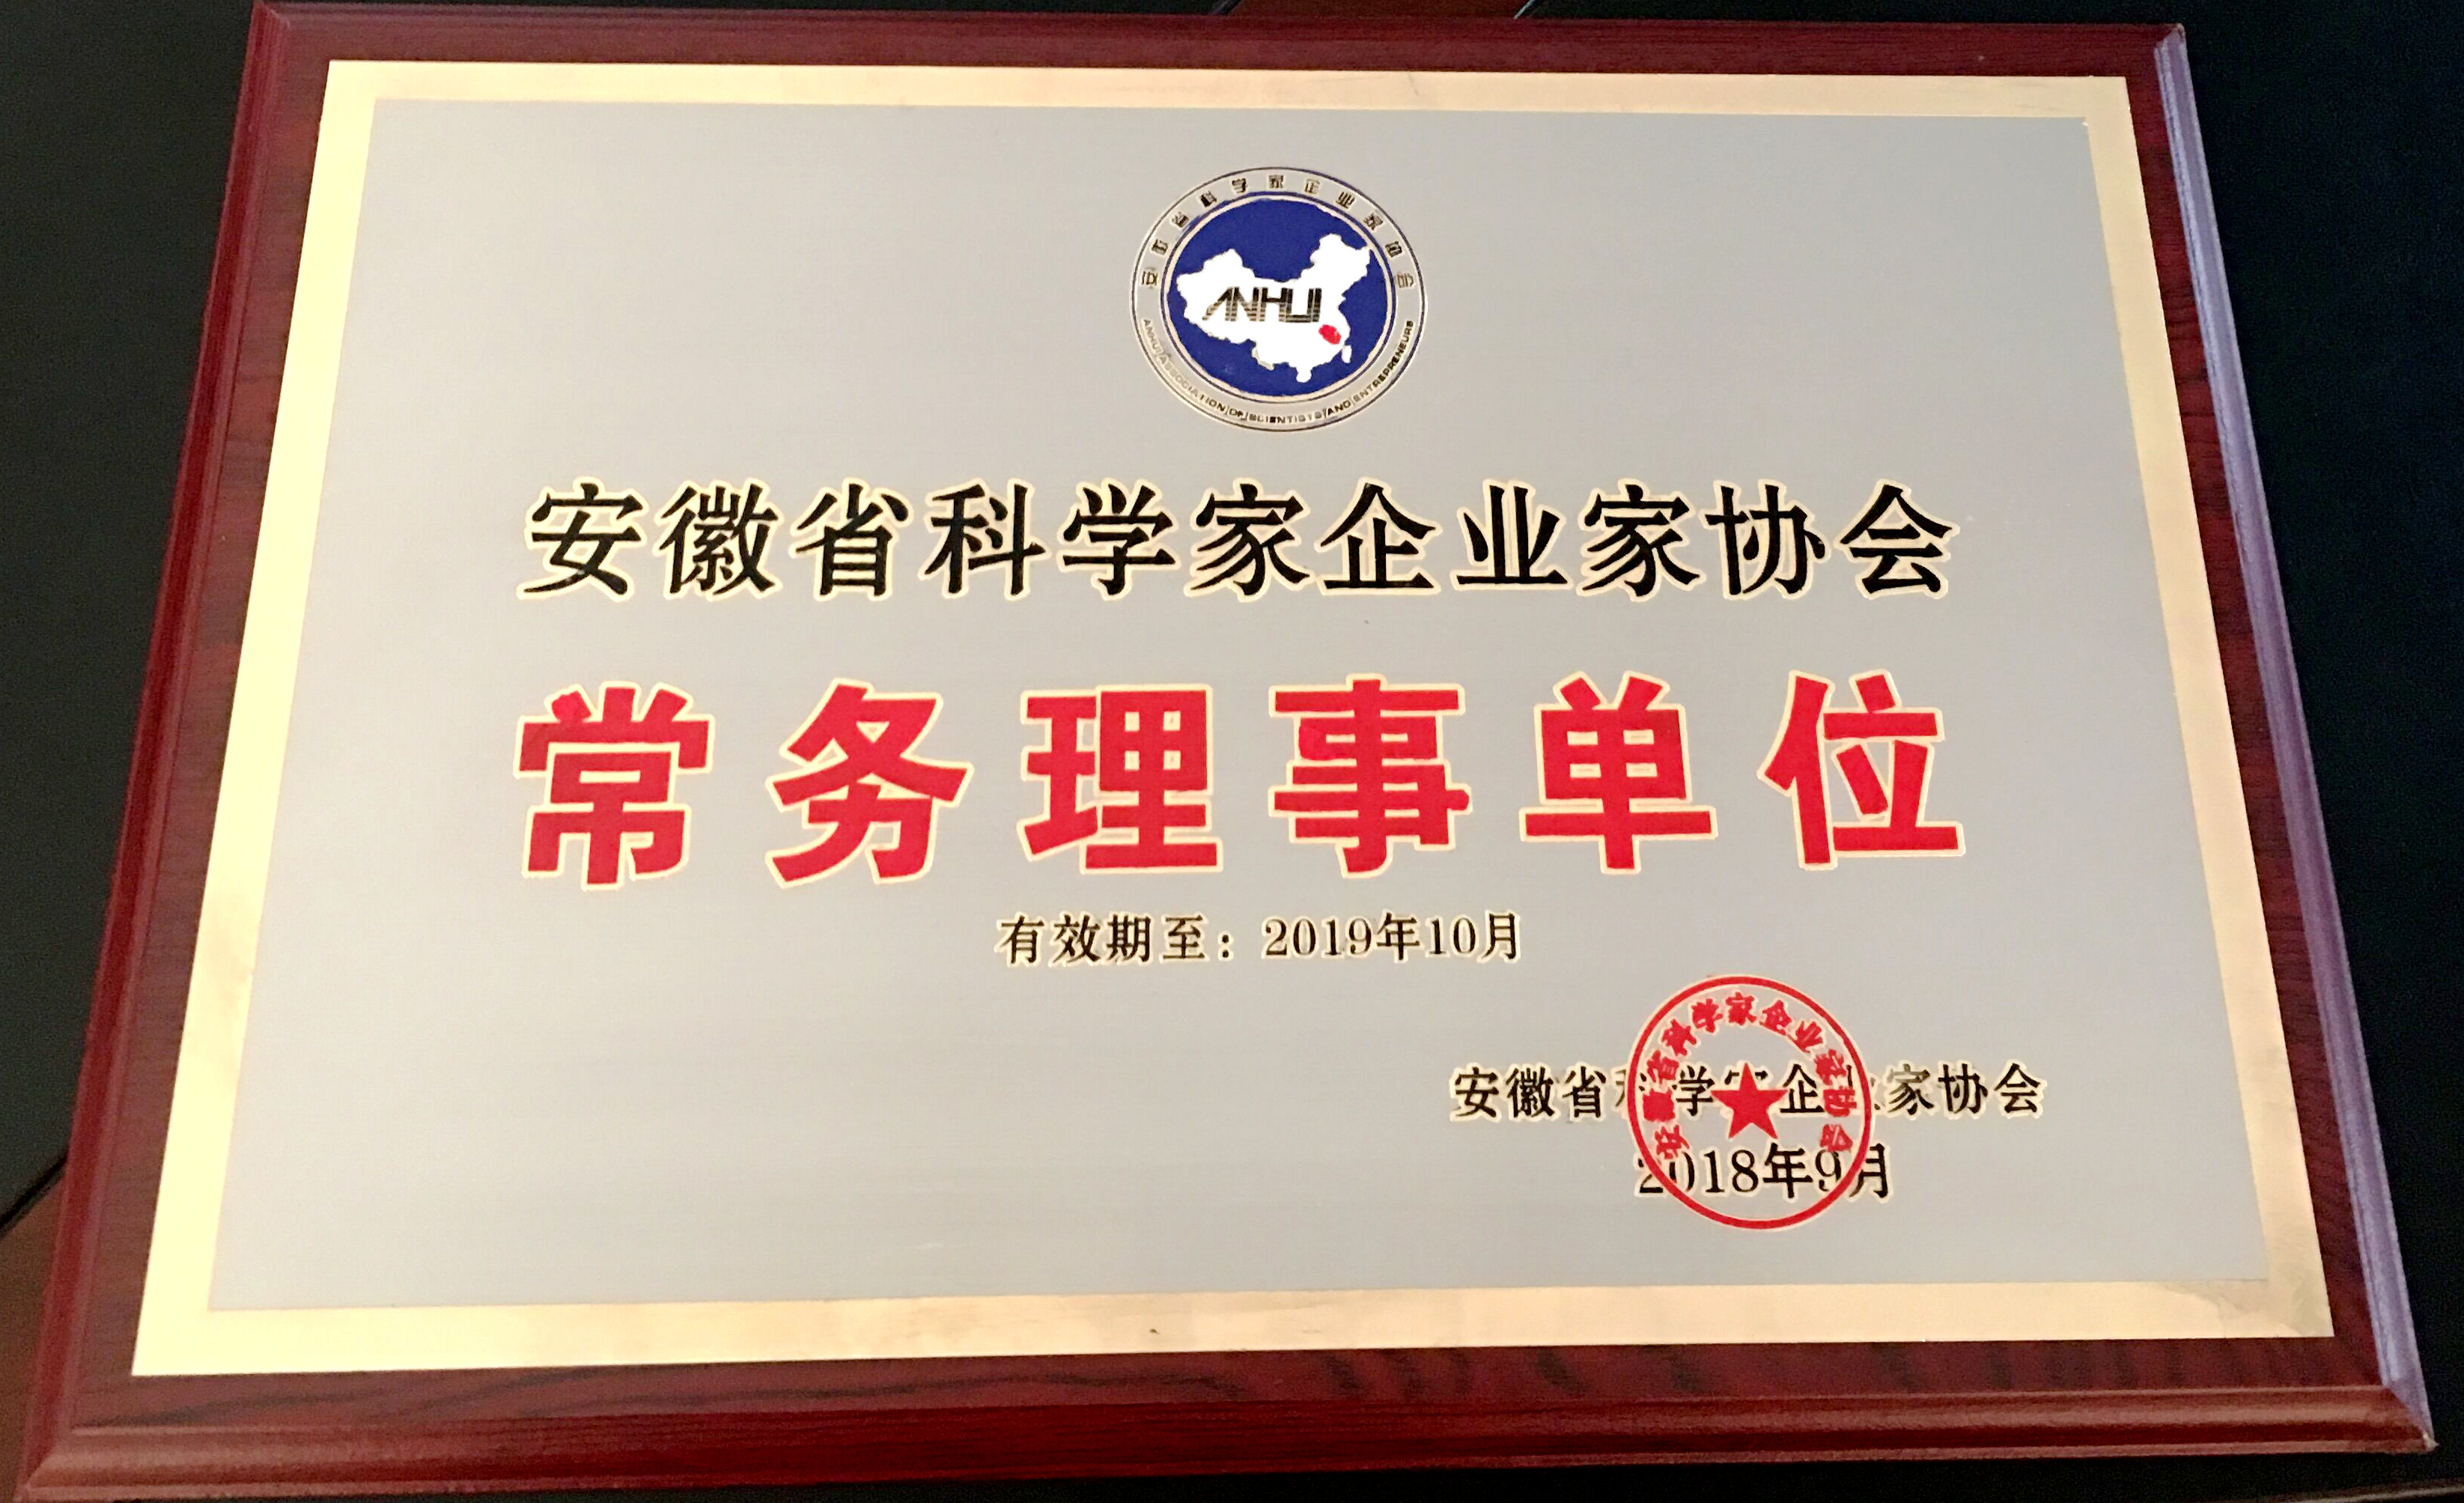 恭喜得潤電氣榮獲安徽省科學家企業家協會頒布的常務理事單位授牌